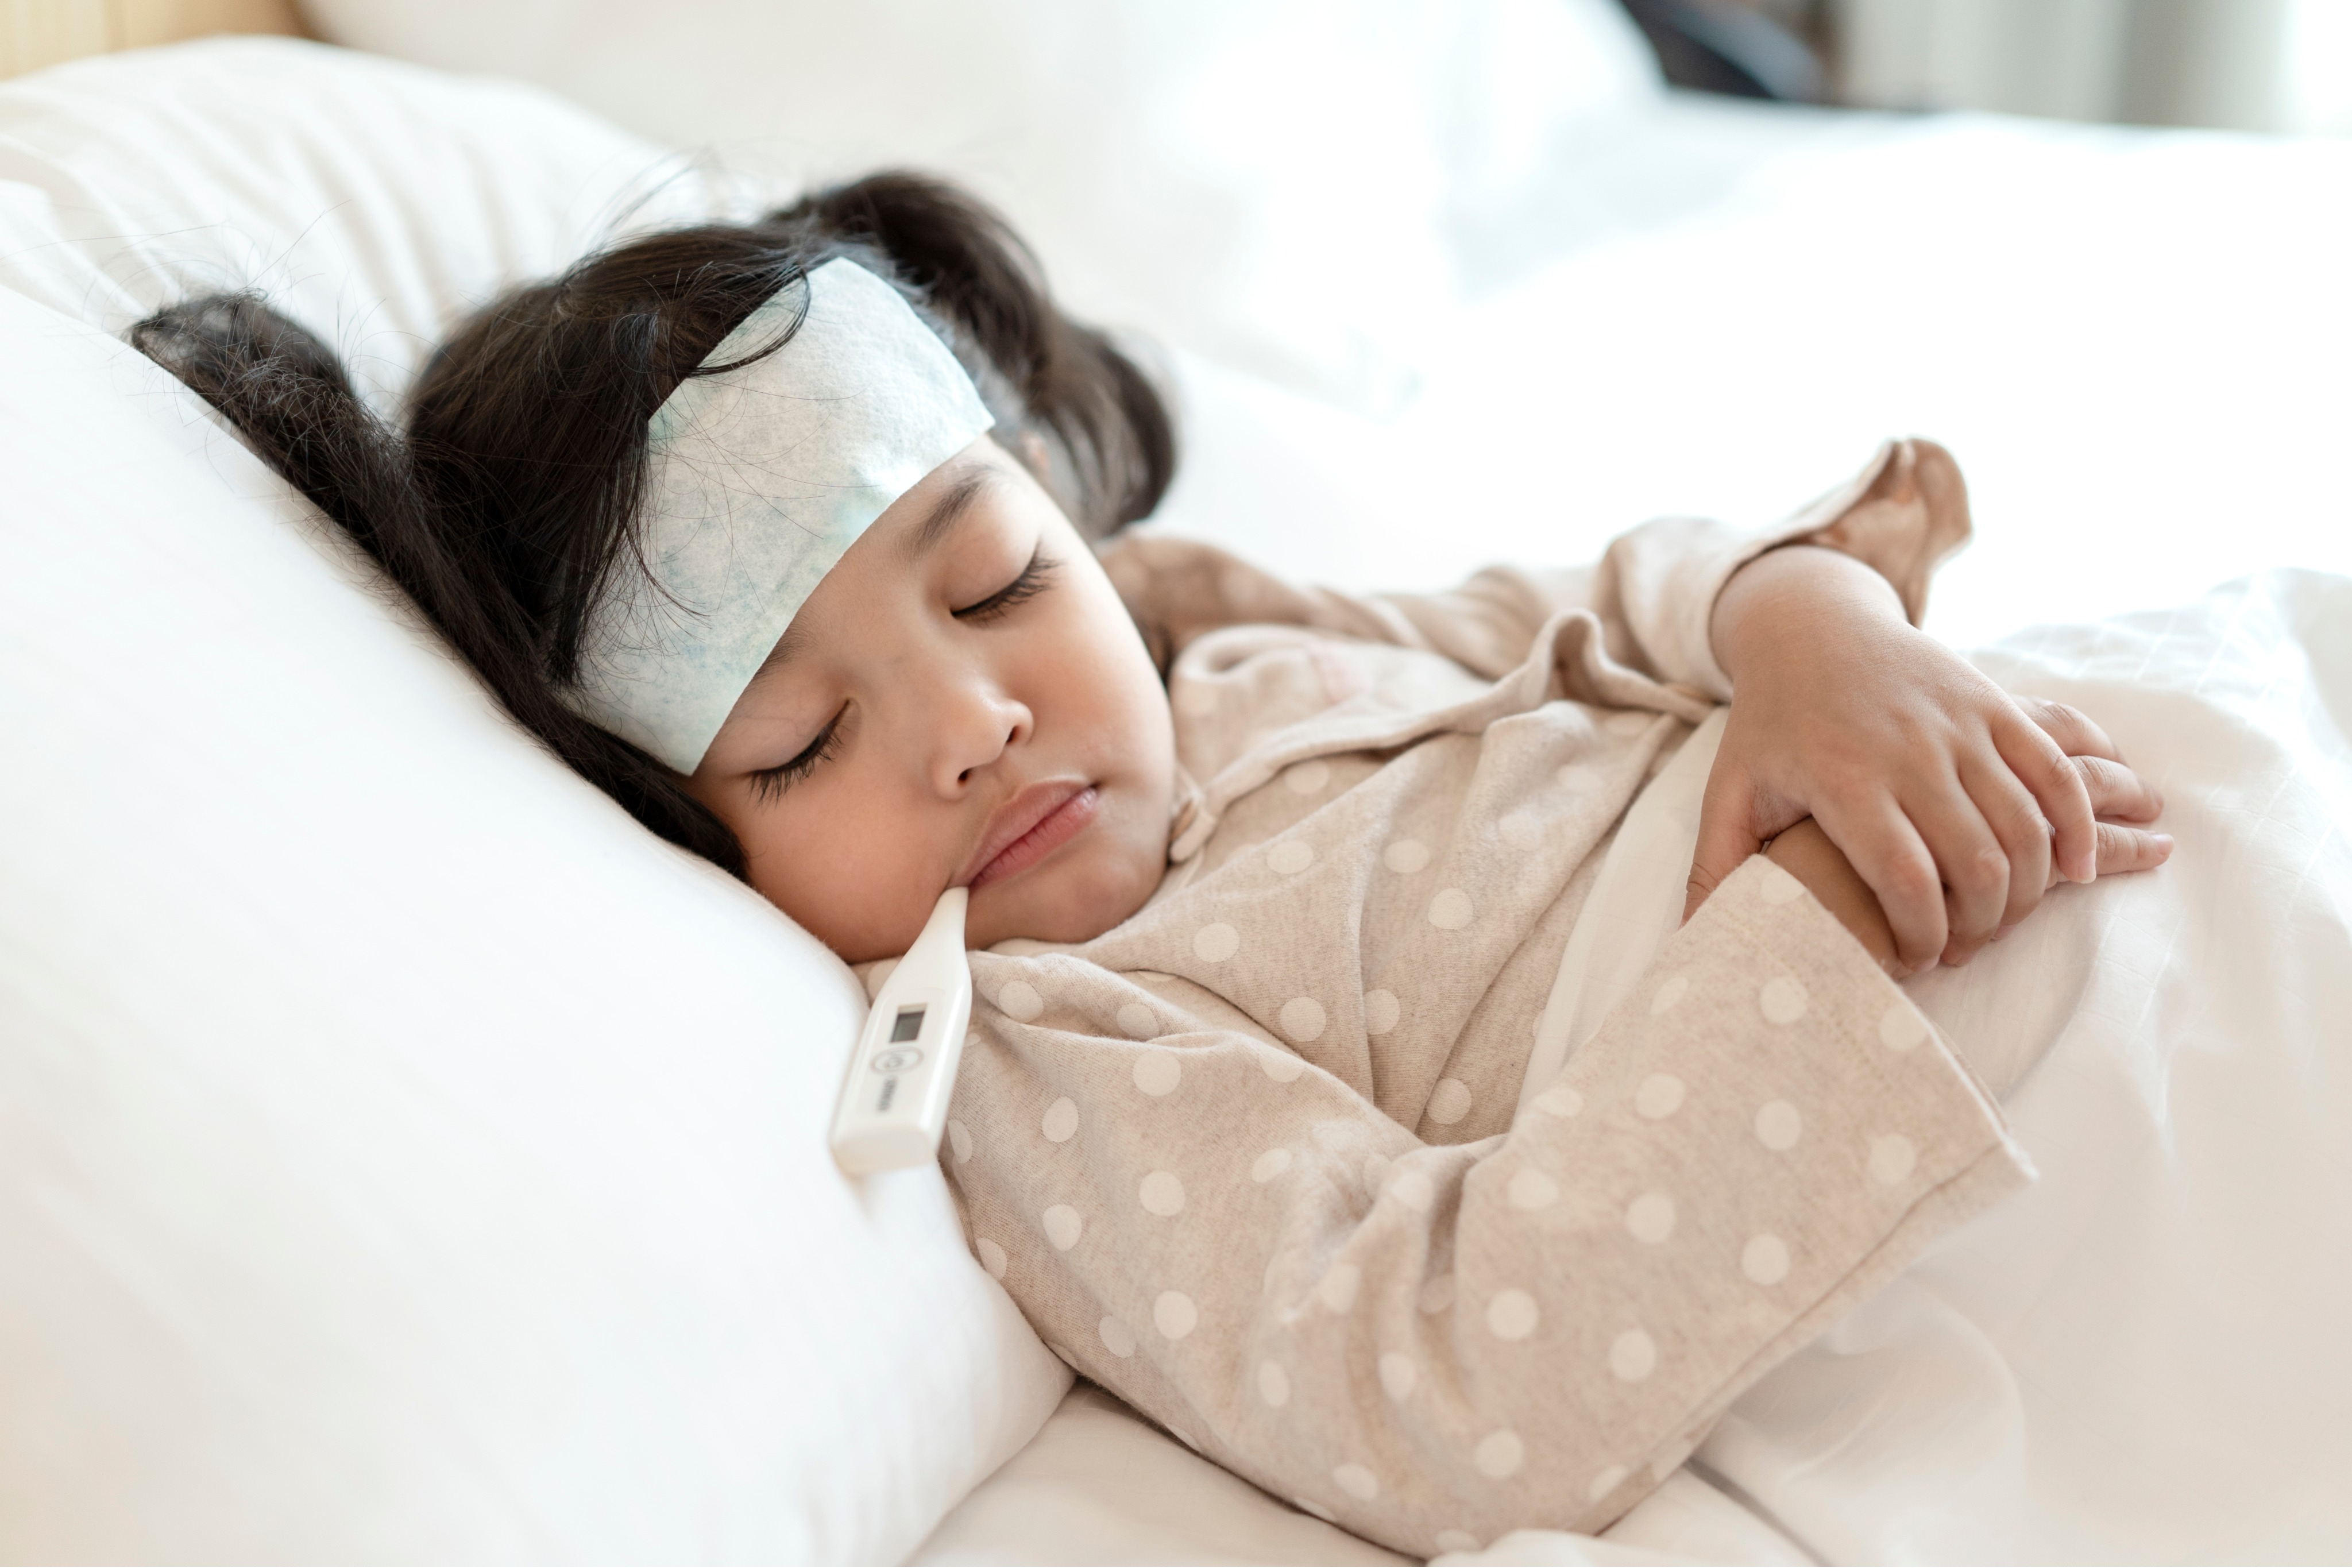 
La fiebre no tiene por qué asustarlos. Aquí te explicamos cómo ayudar a tu hijo cuando tenga fiebre.